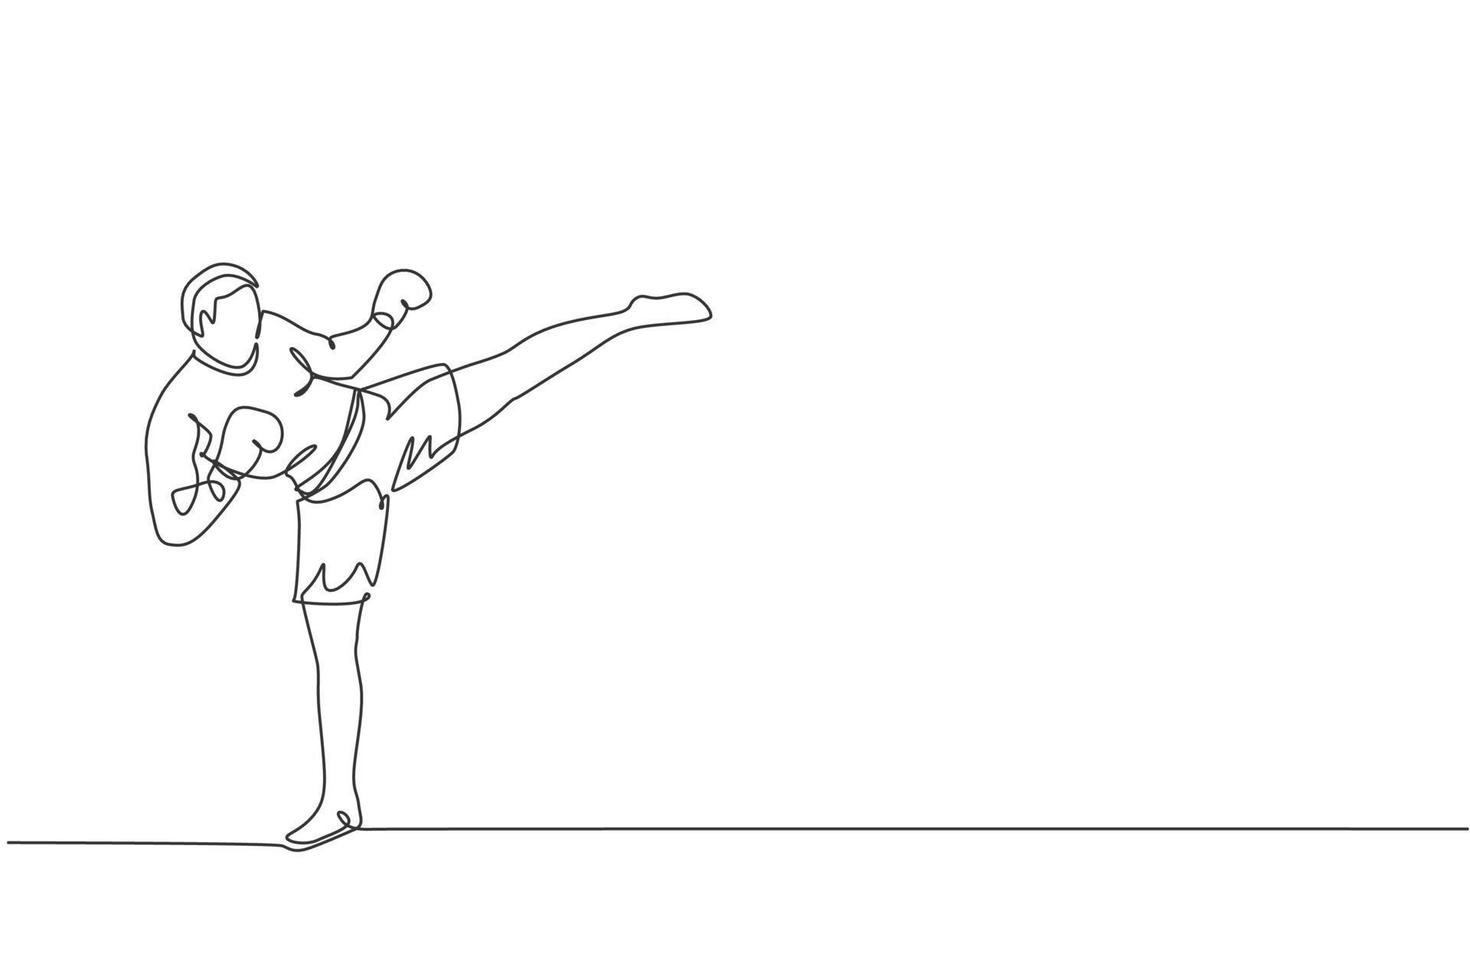 un disegno a linea continua di un giovane sportivo kickboxer atleta che allena una potente posizione di calcio al centro della palestra. concetto di sport di kickboxing combattivo. illustrazione vettoriale dinamica del disegno a linea singola